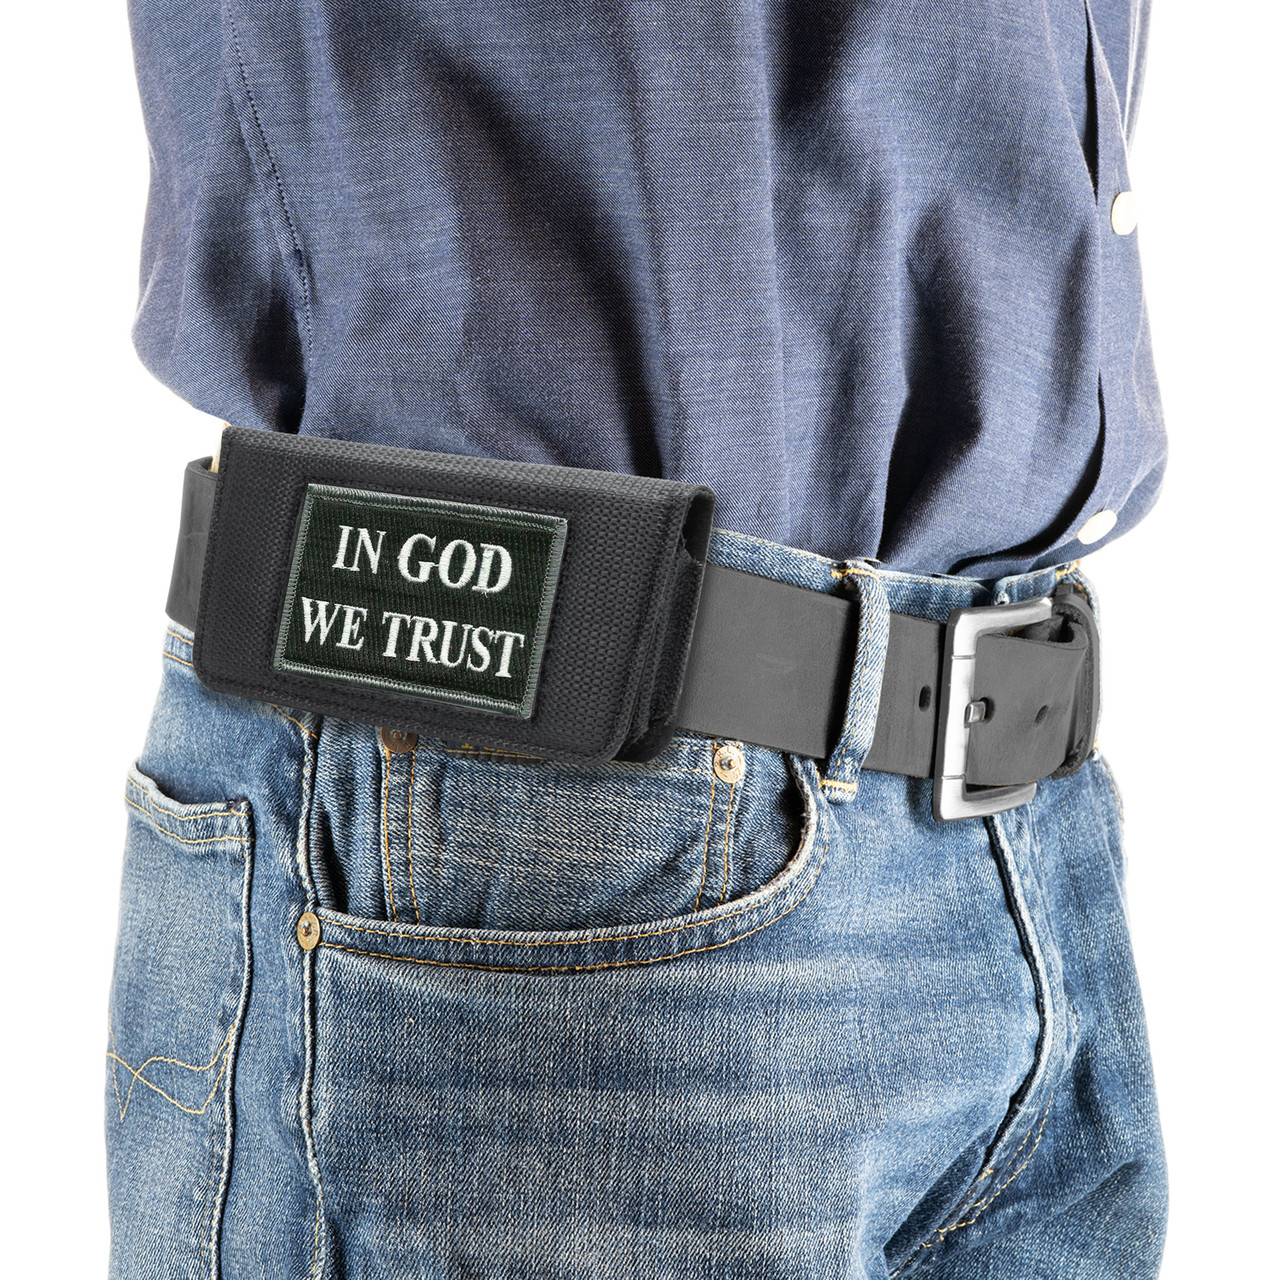 In GOD we Trust Phone Case